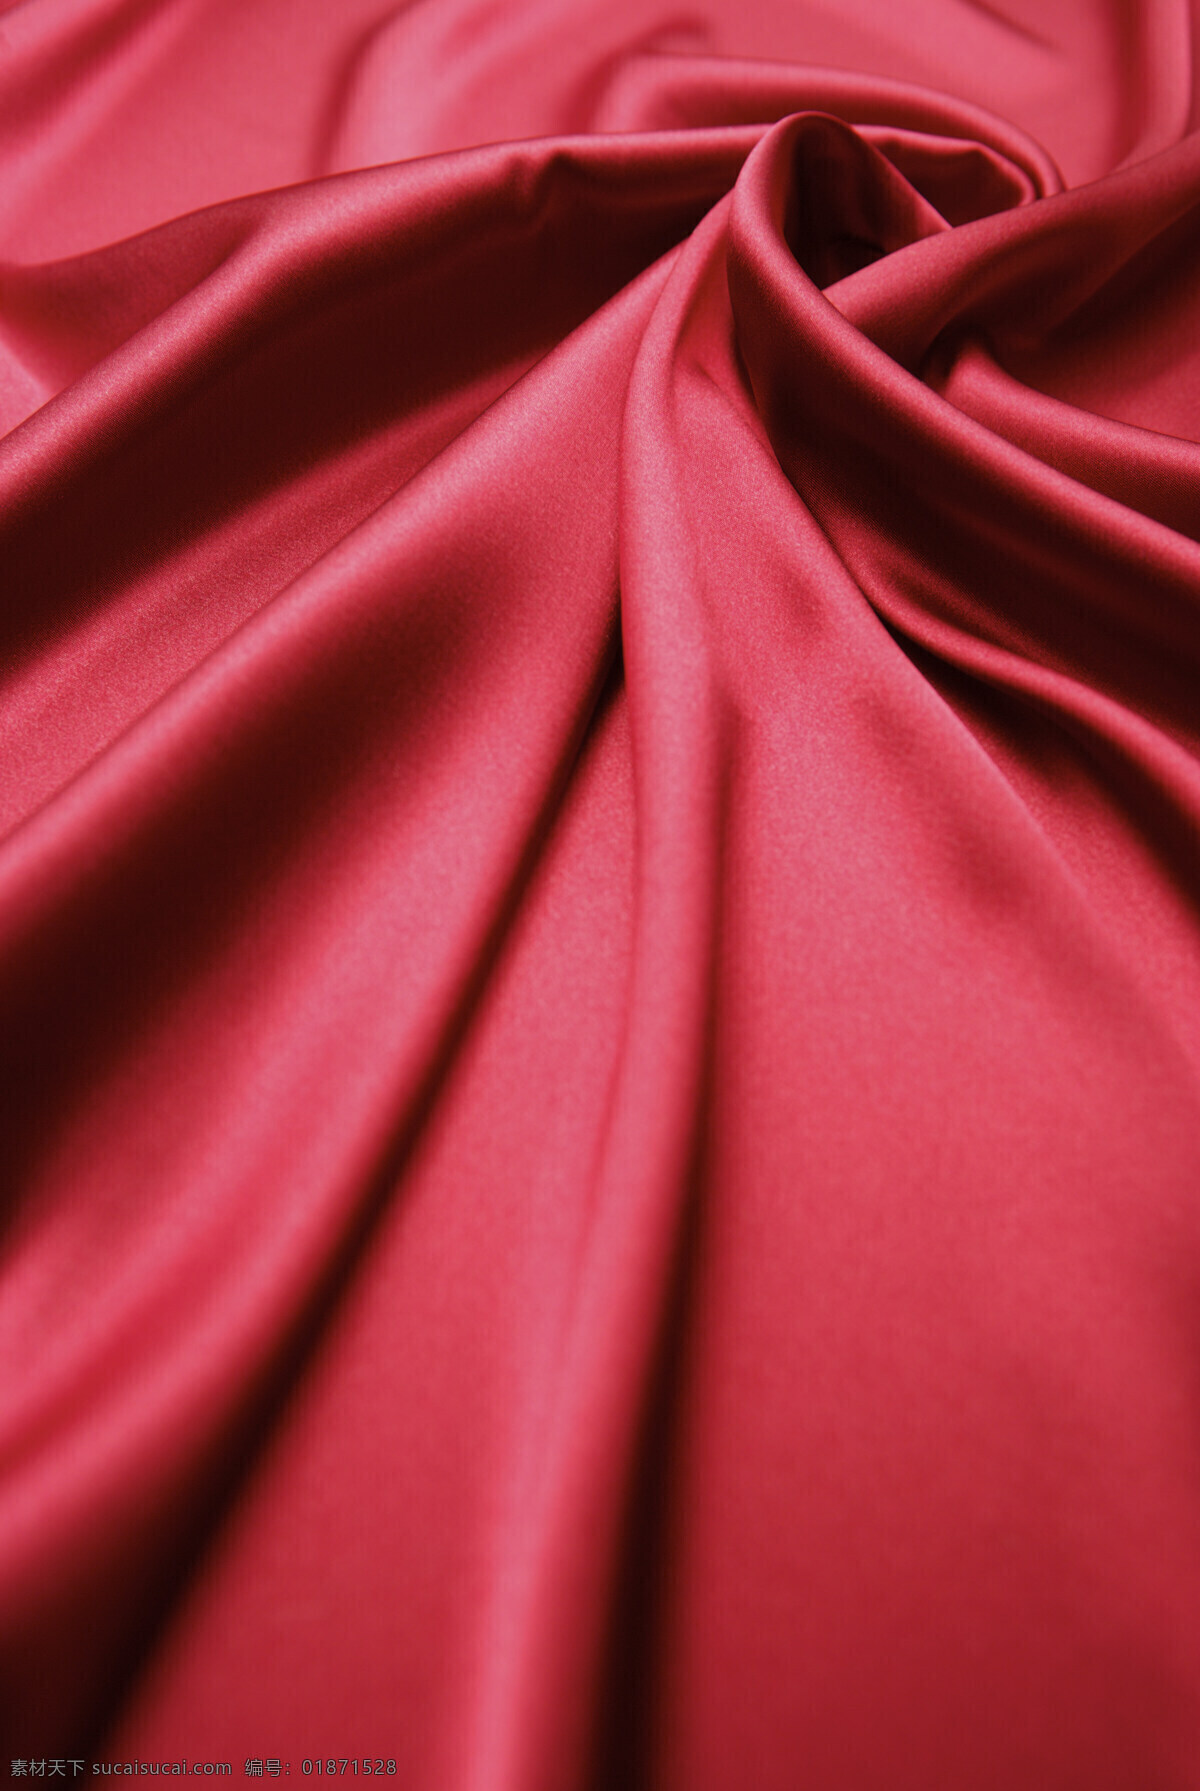 大红色 高档 丝绸 布料 布 花纹布料 面料 绒布 棉绒 纹理材质